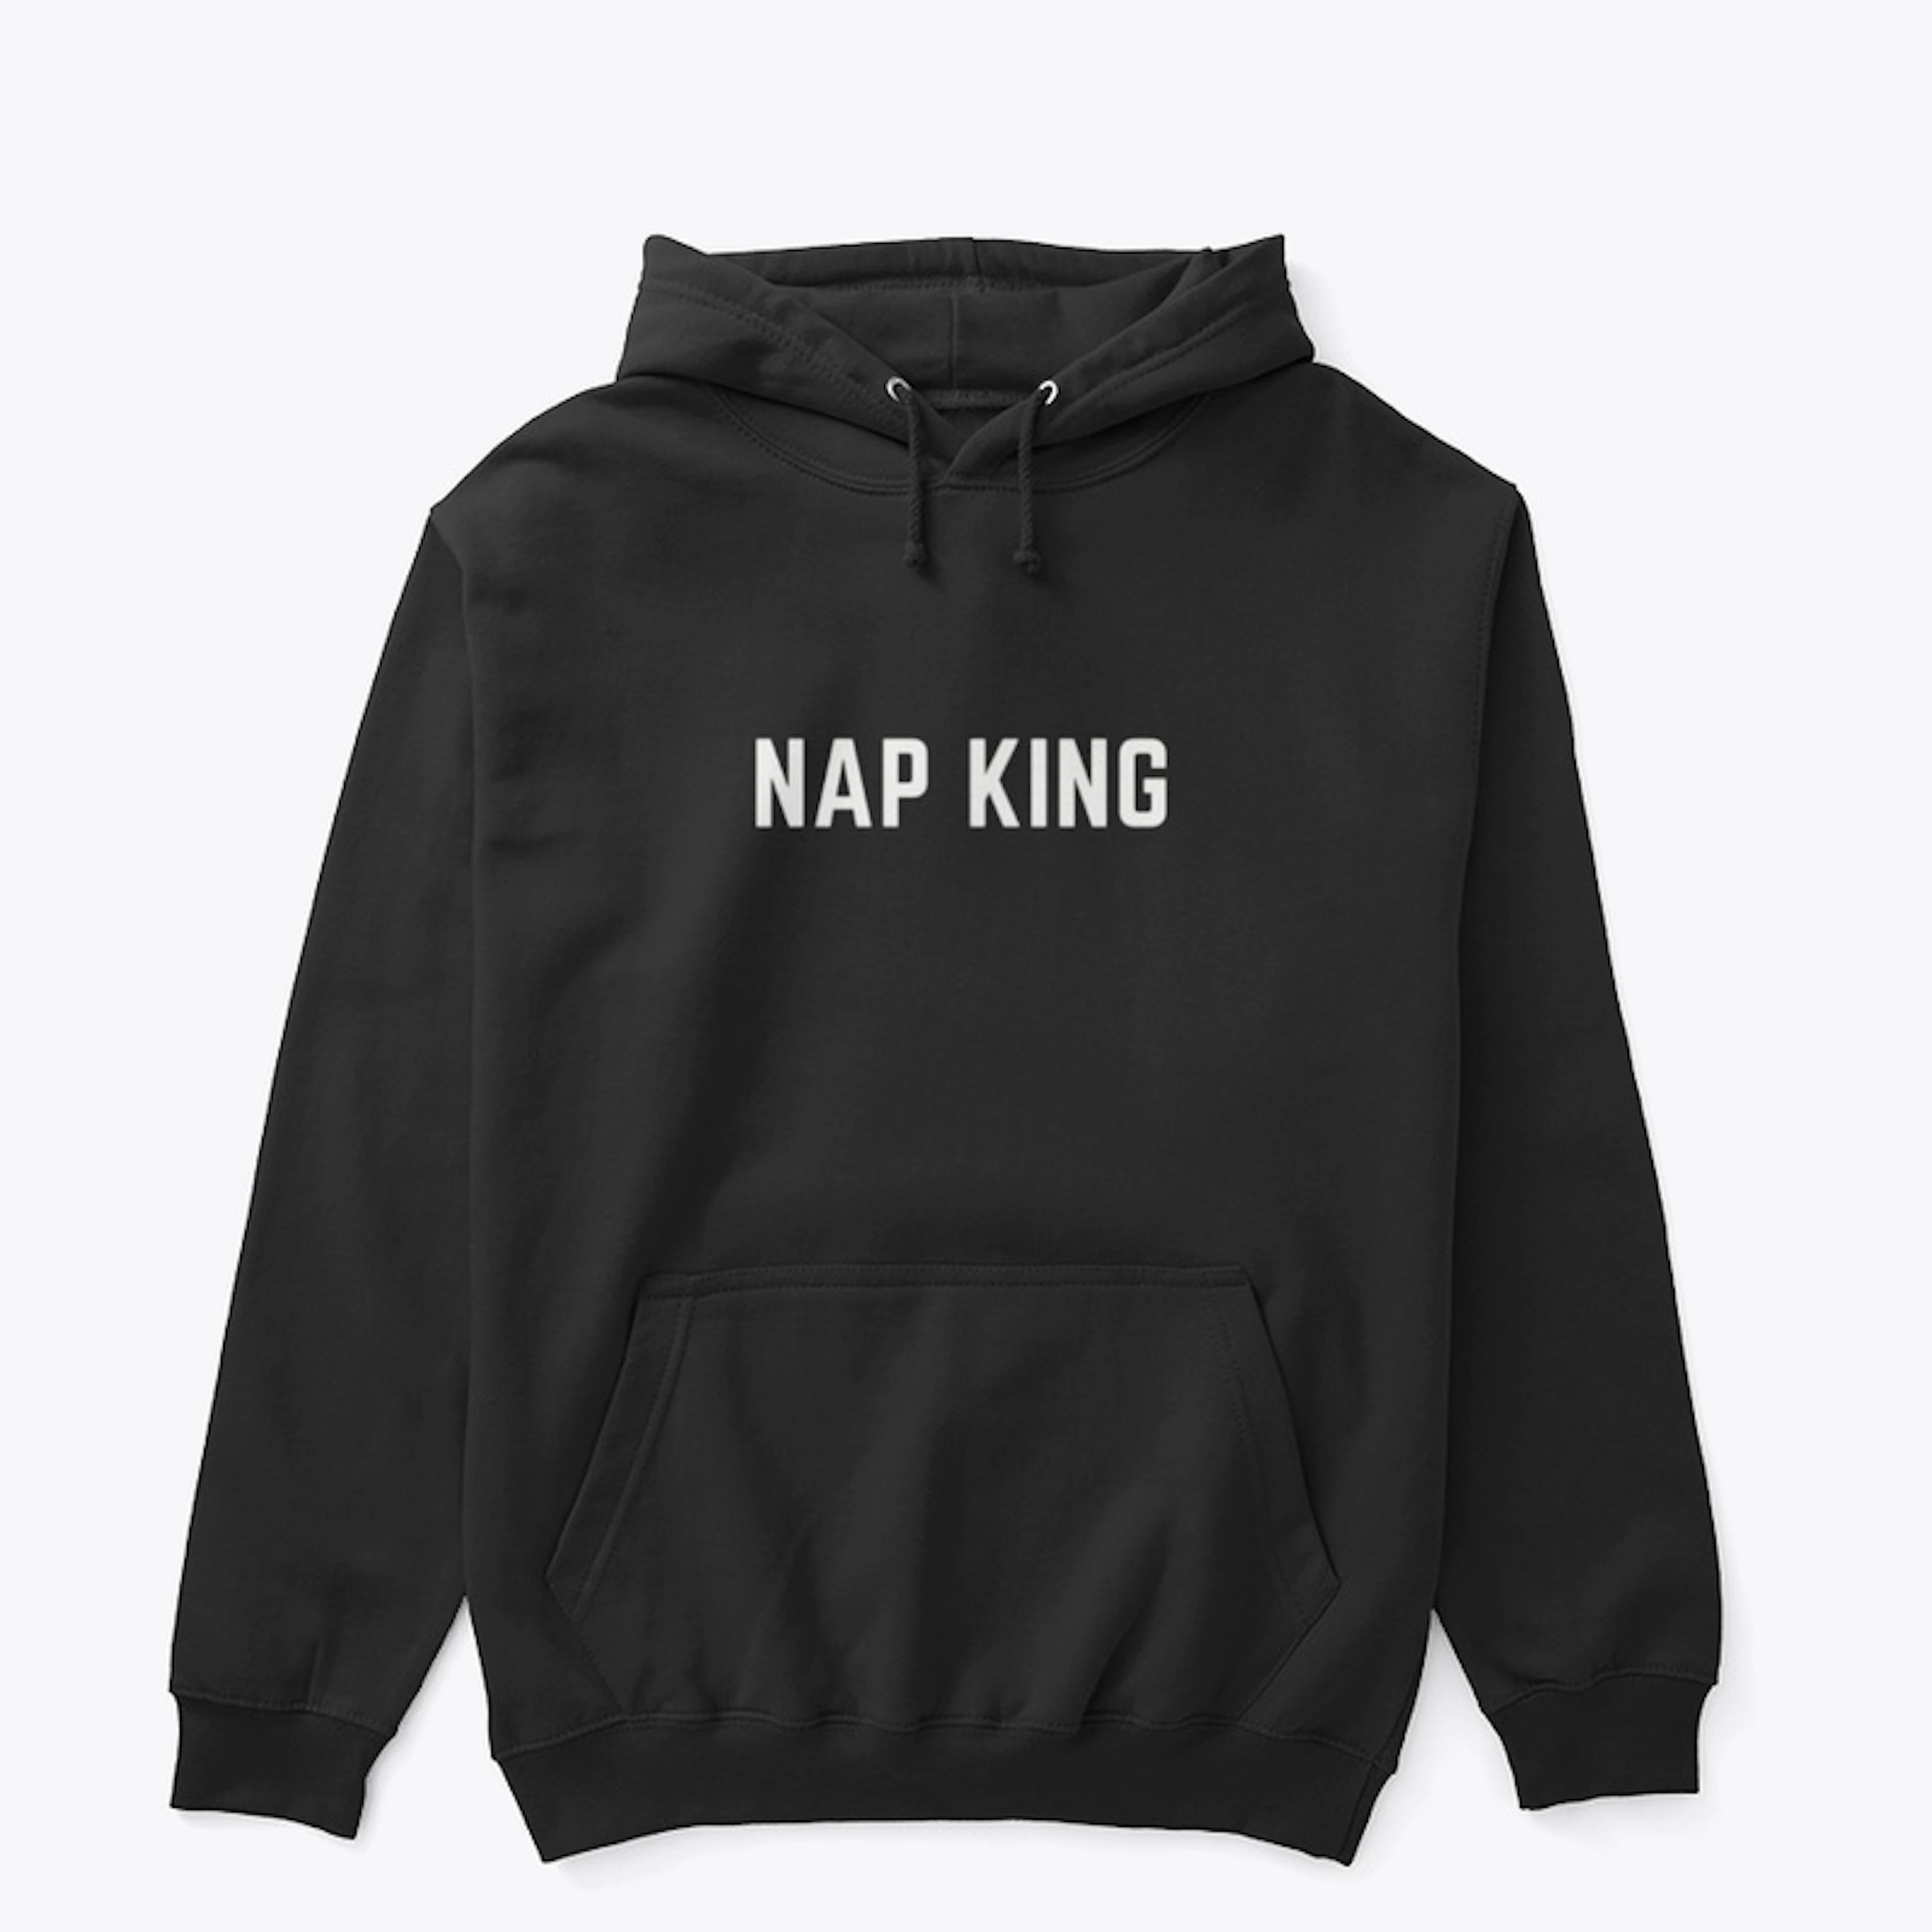 Nap king